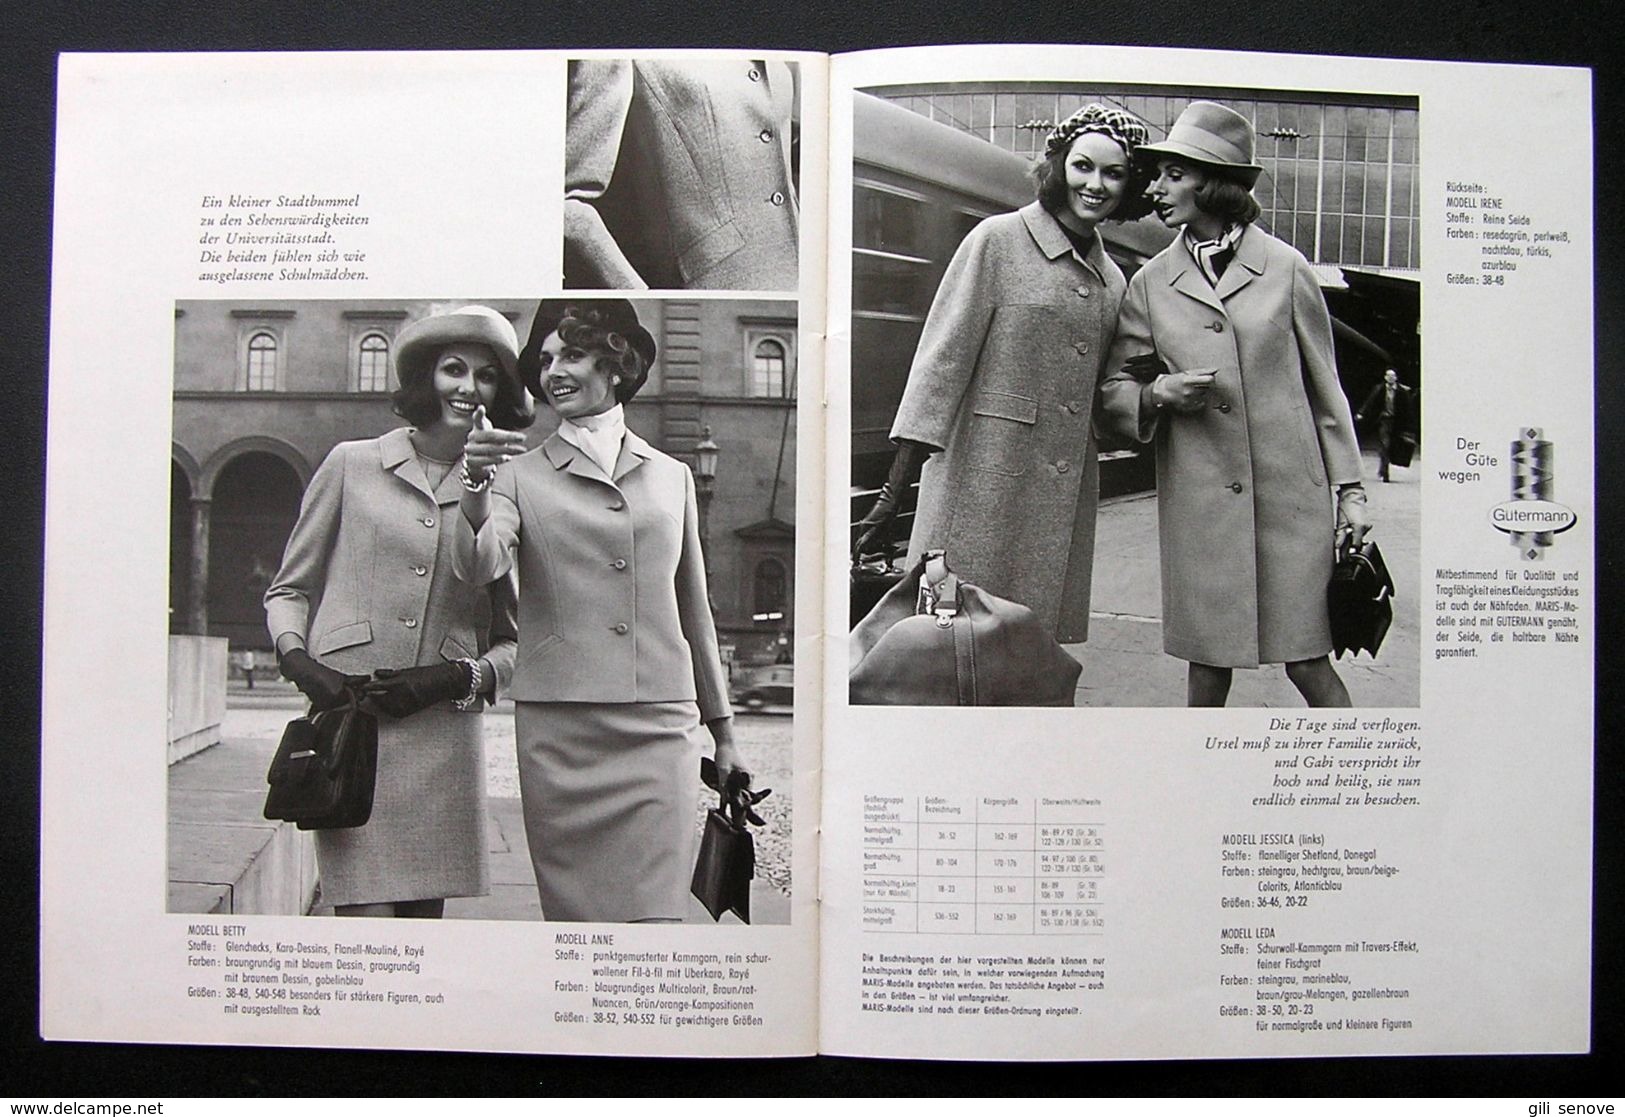 Original Maris Journal 1969 Vintage Fashion Advertising Booklet - Kataloge